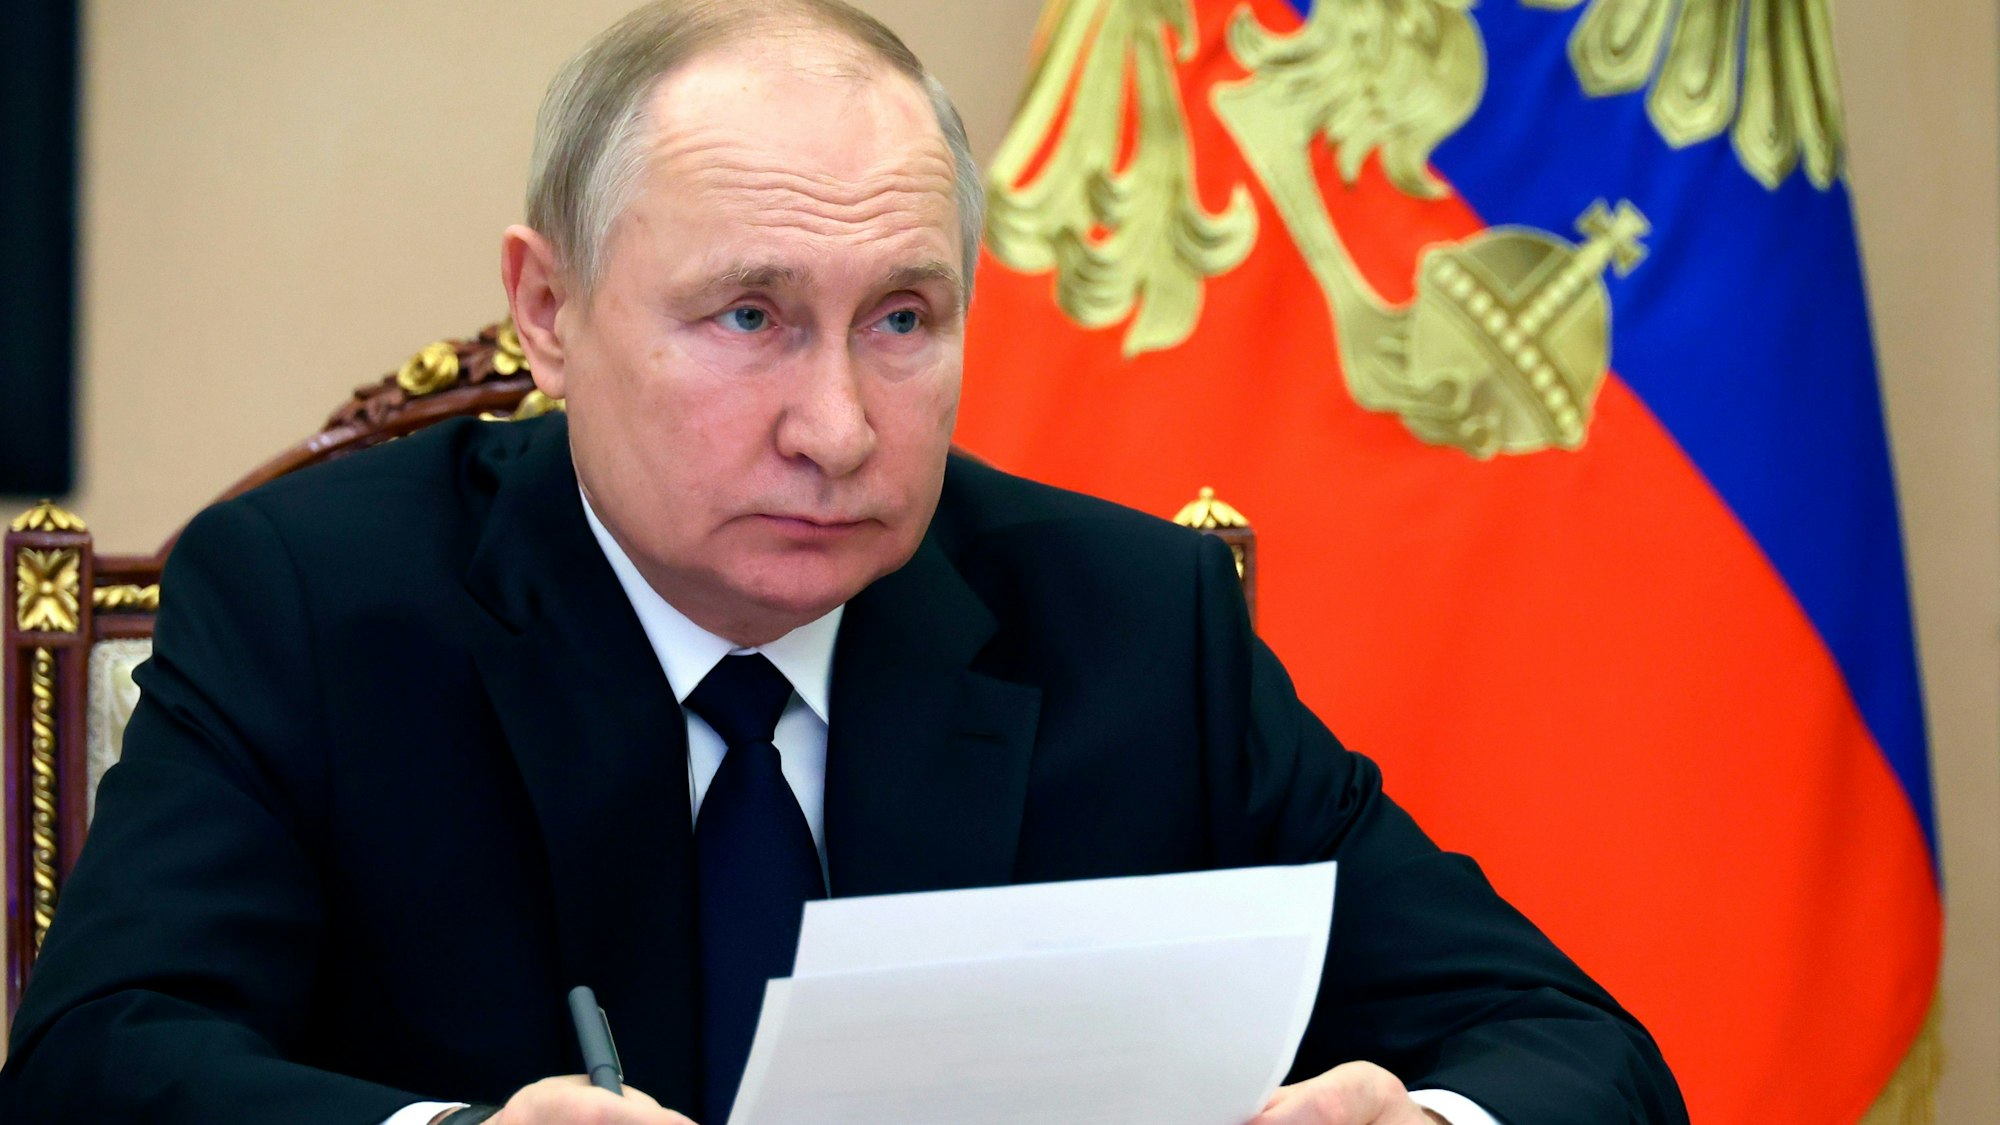 Dieses von der staatlichen russischen Nachrichtenagentur Sputnik via AP veröffentlichte Foto zeigt Wladimir Putin, Präsident von Russland, der per Videokonferenz an der Eröffnungszeremonie für das Gaskondensatfeld Kowykta teilnimmt.